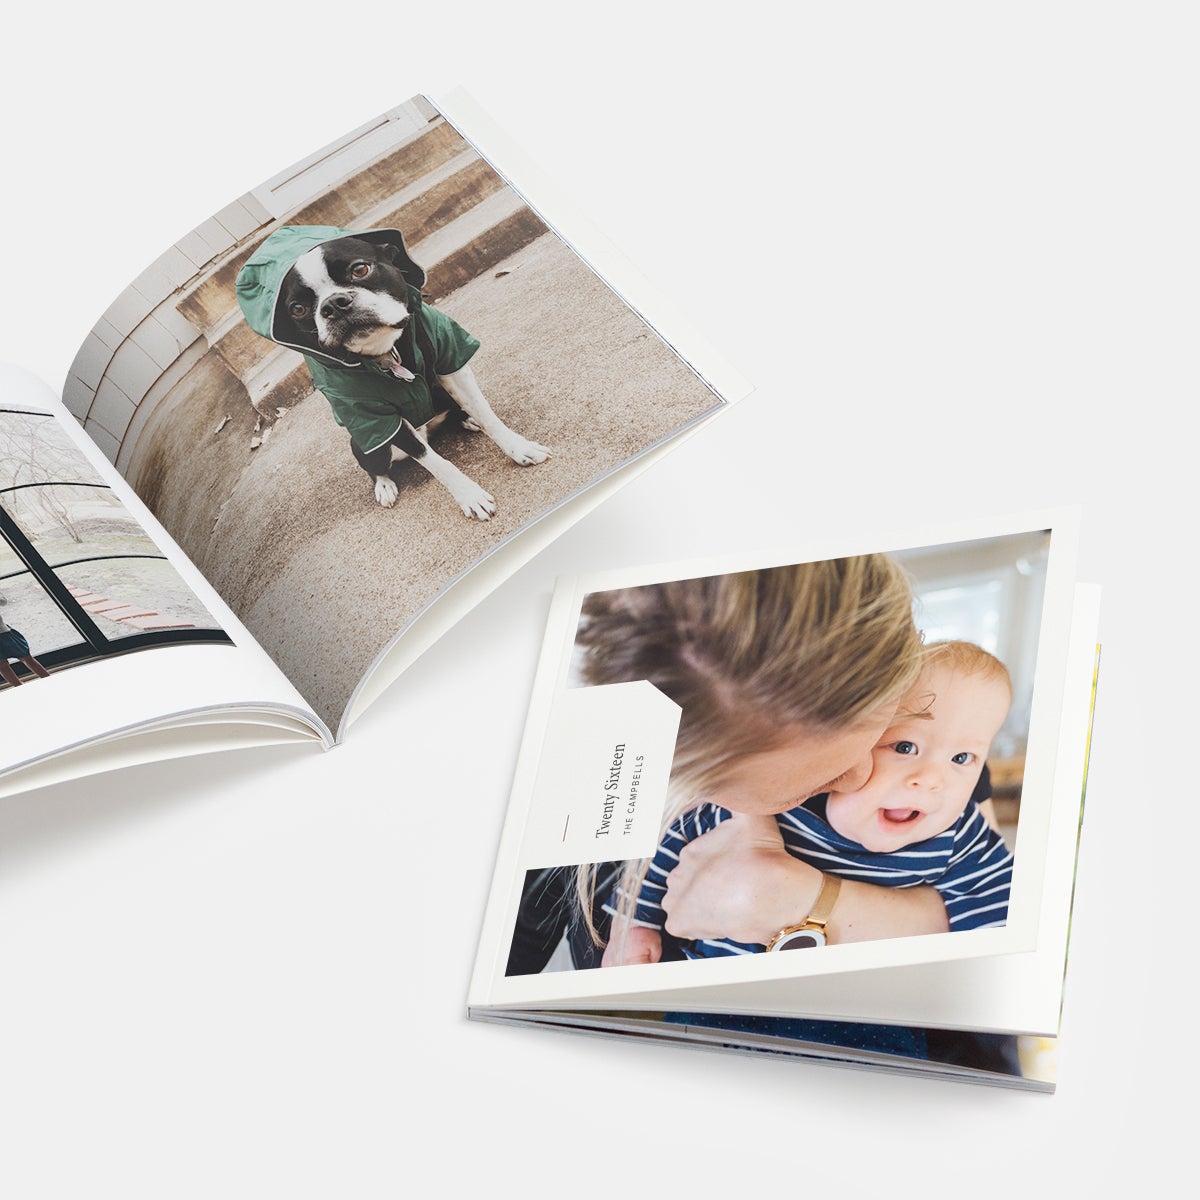 How to Make a Mini Photo Book 